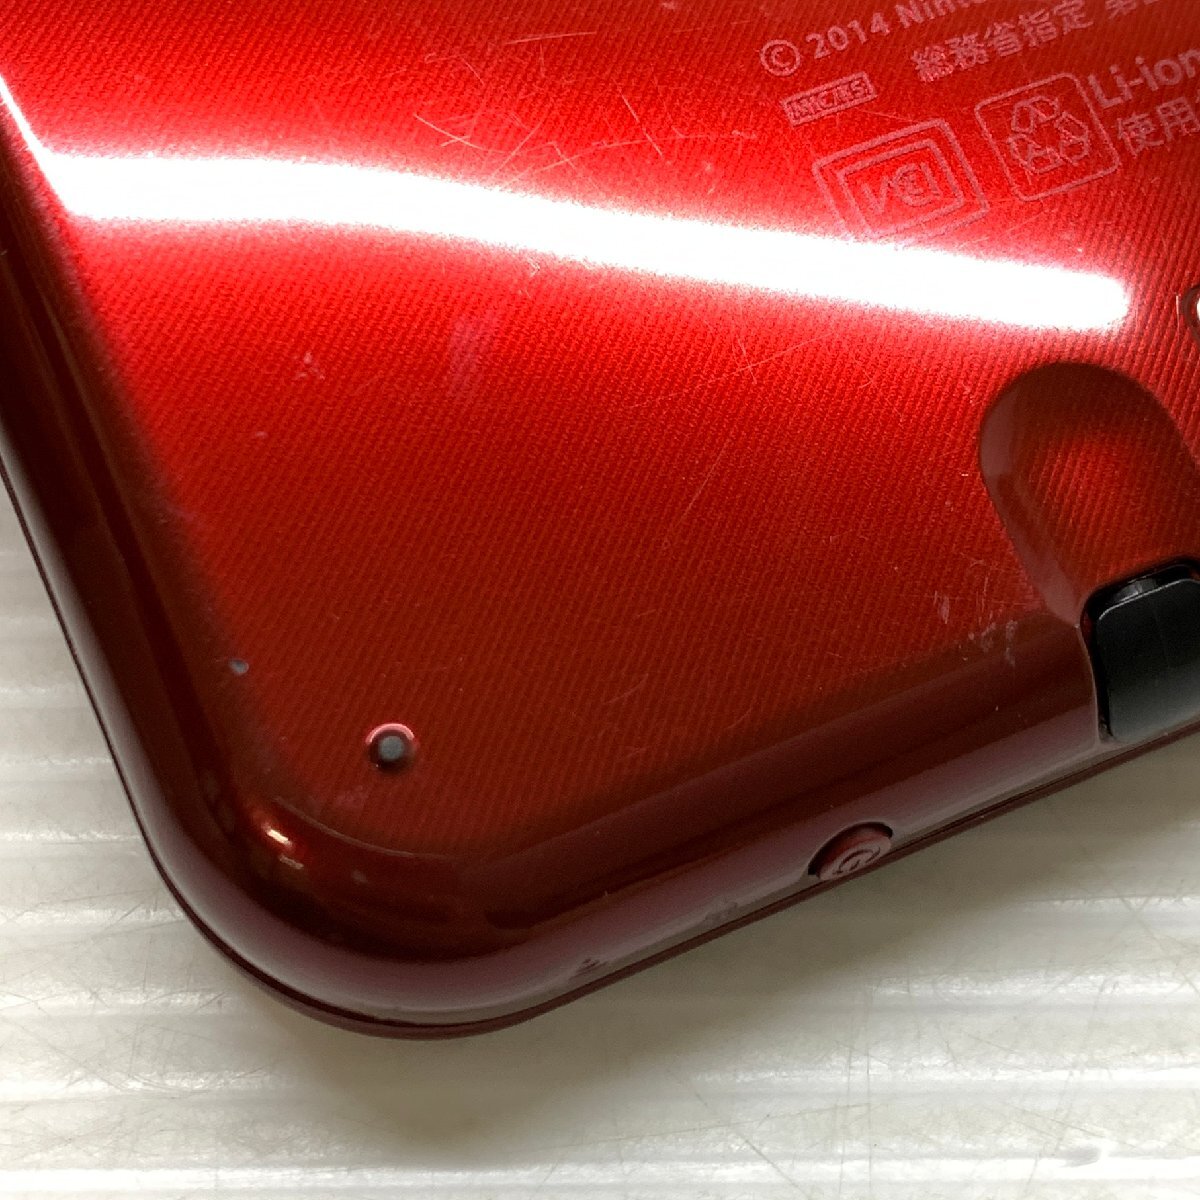 MIN【現状渡し品】 MSMG Nintendo ニンテンドー New 3DS LL 本体のみ メタリックレッド RED-001 RED-S-JPN-C0 〈36-240330-CN-13-MIN〉_画像6